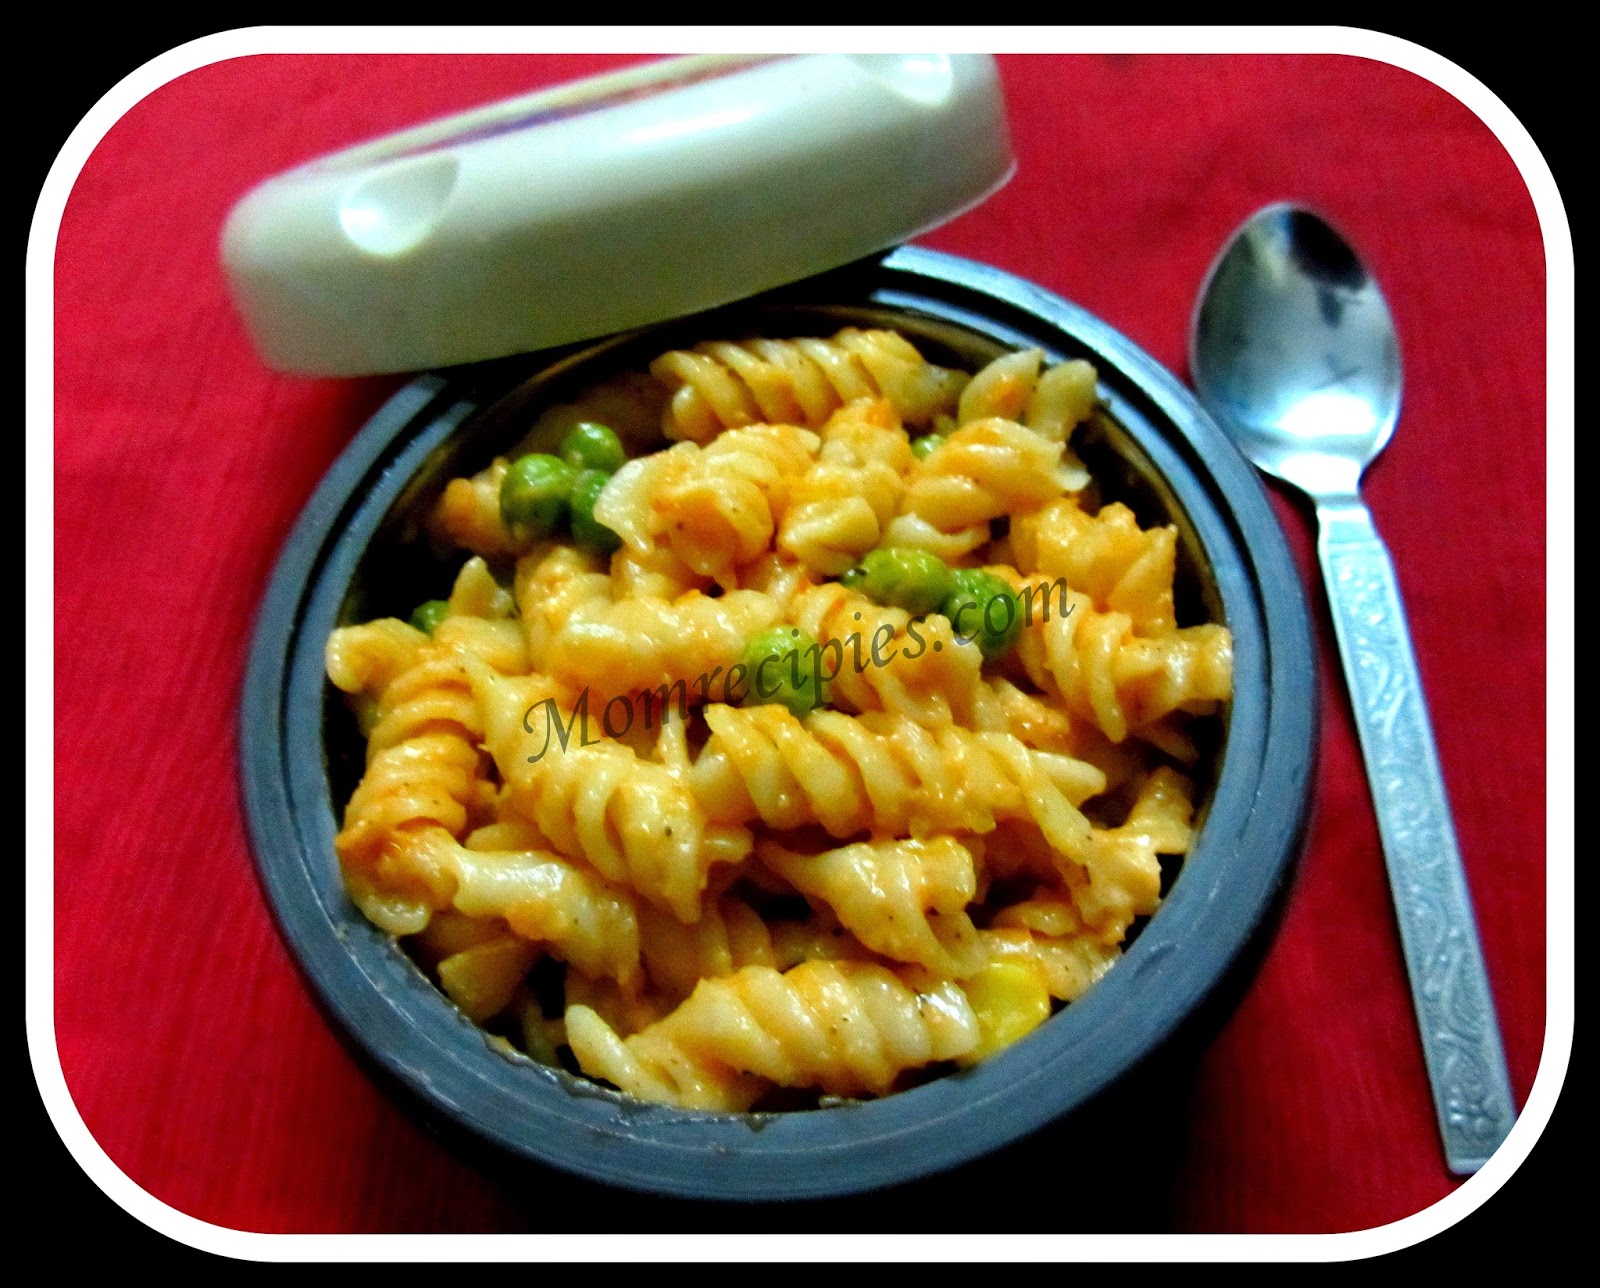 Mom's Recipies: Tomato cheese pasta ~Kids Lunch Box Recipe